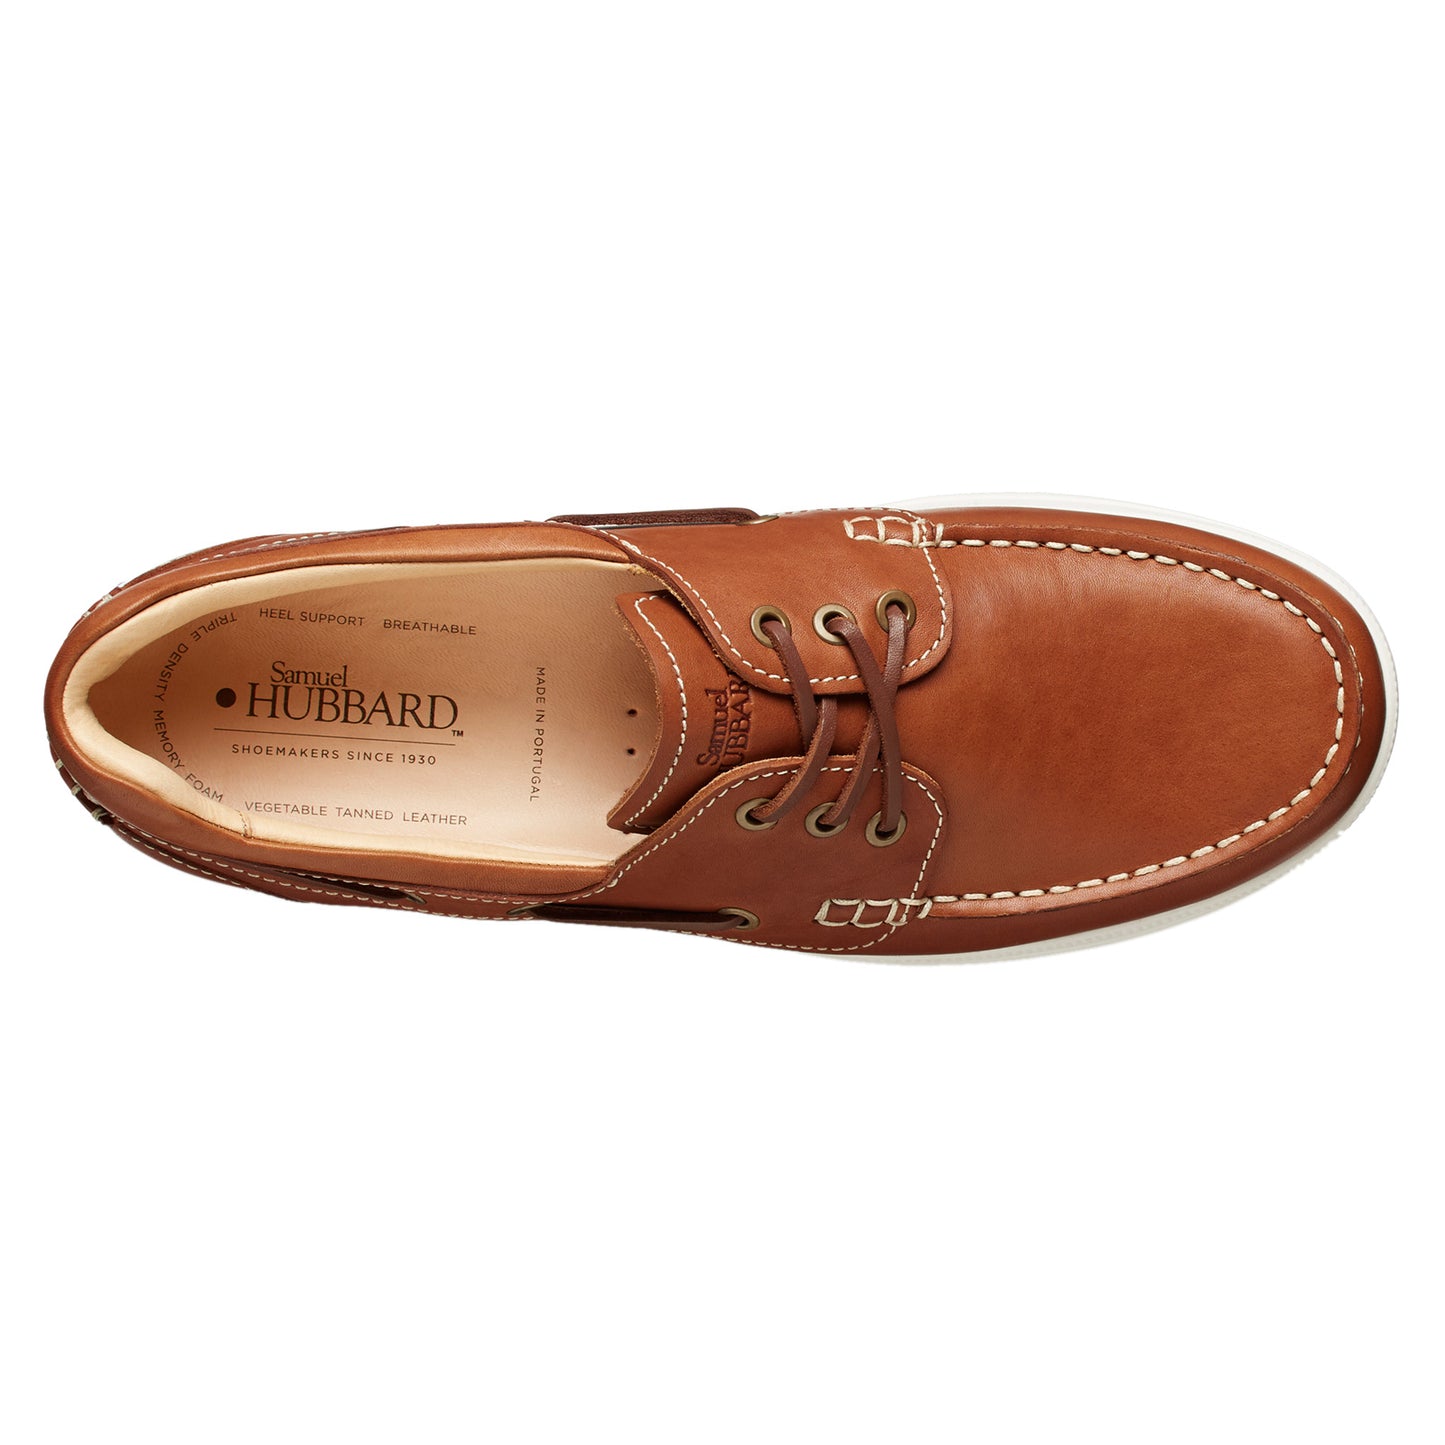 Peltz Shoes  Men's Samuel Hubbard New Endeavor Boat Shoe TAN M1500-105